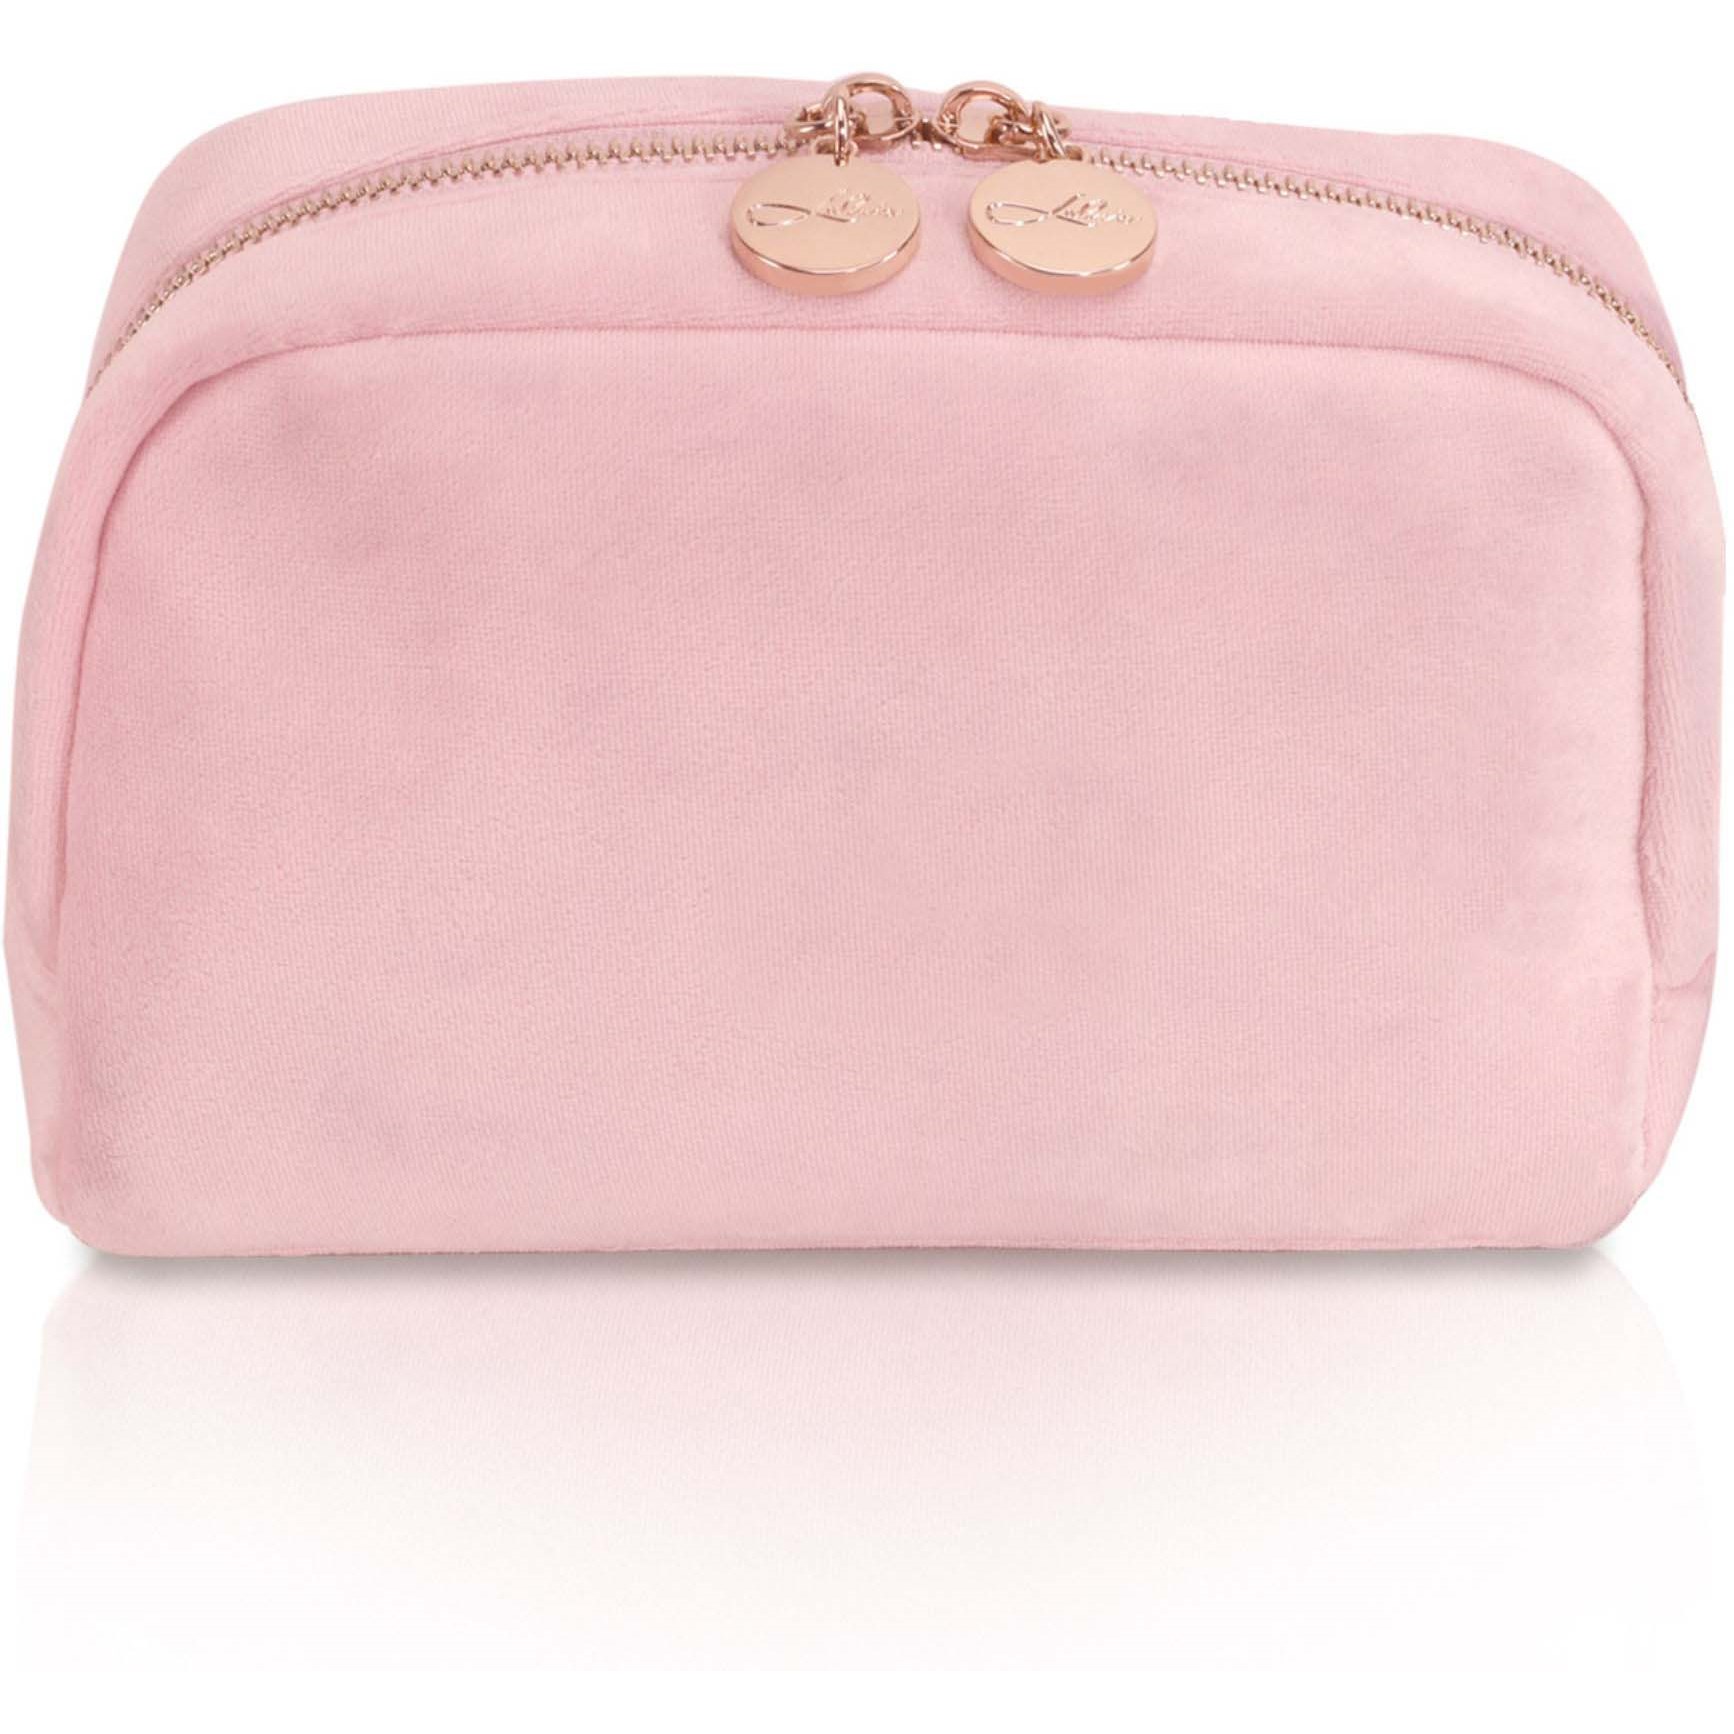 Bilde av Lulu's Accessories Cosmetic Bag Velvet Pink